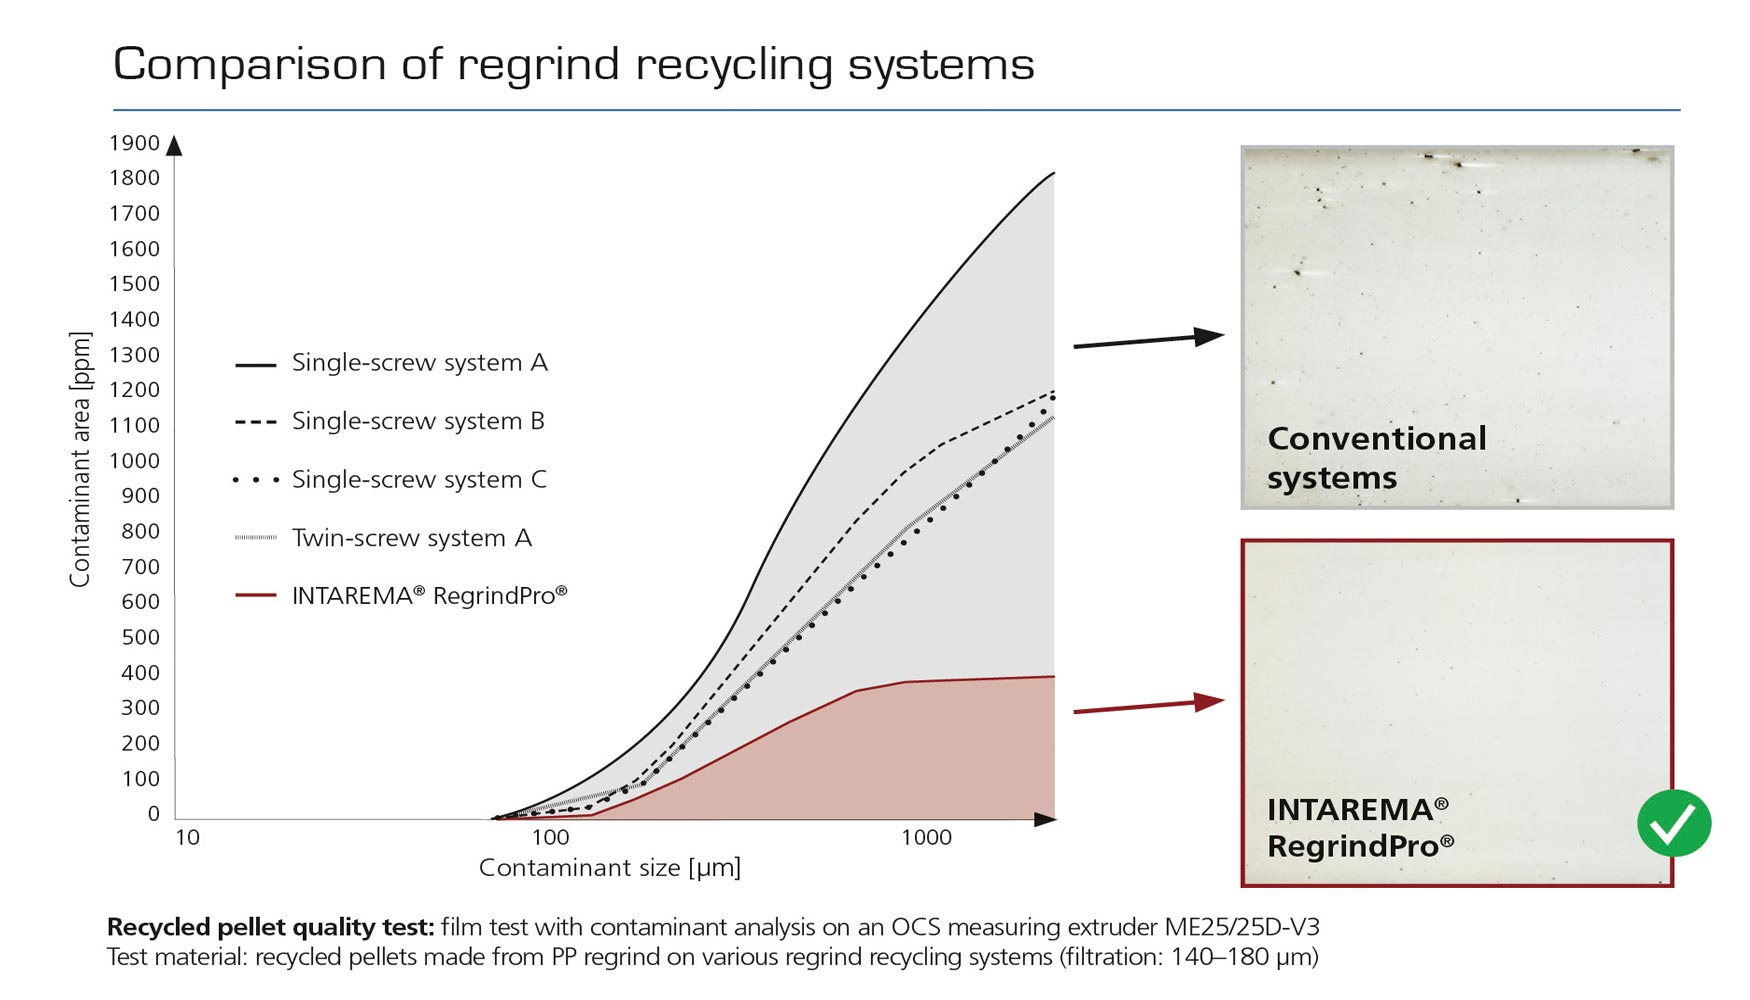 Fig. 4: Comparativa de sistemas de reciclaje de material triturado